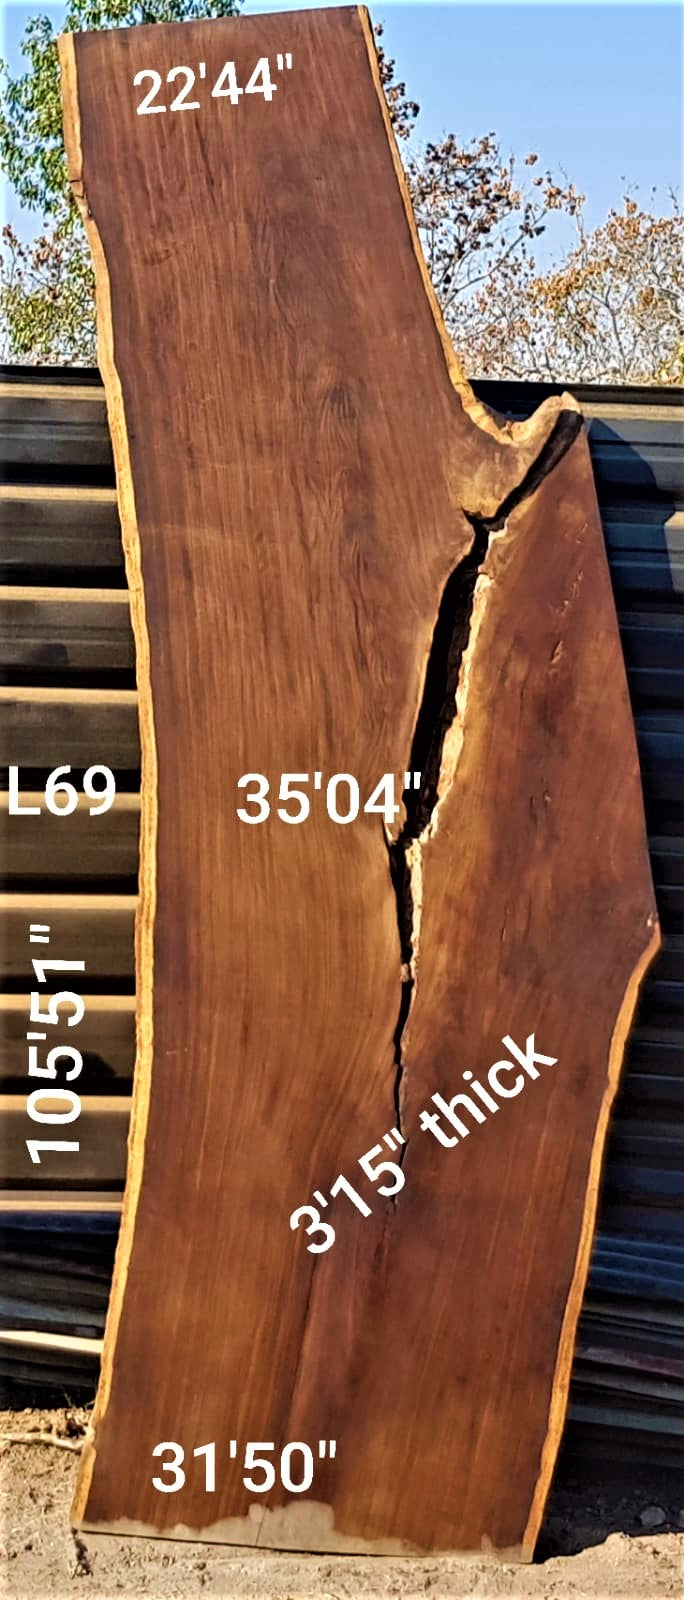 Leadwood Slab (105.51" x 35.04" x 3.15")